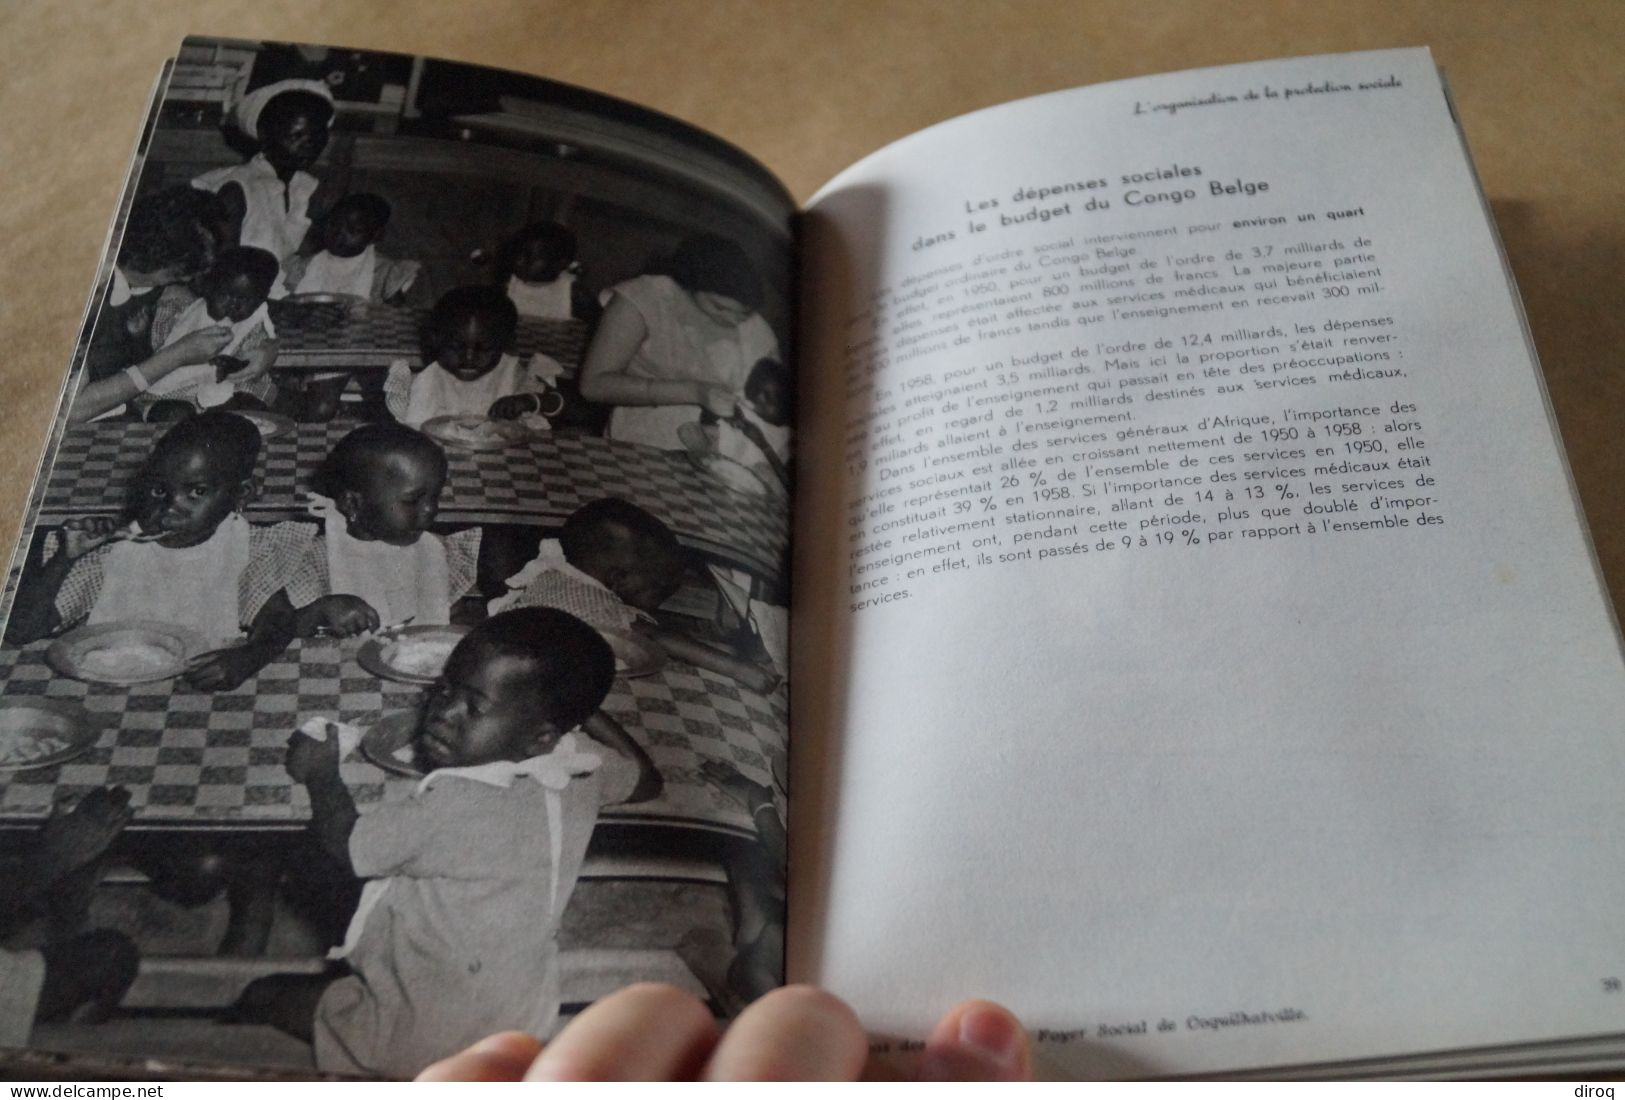 Congo Belge,1957, 13 millions de Congolais,80 pages,24 Cm. sur 16 Cm.